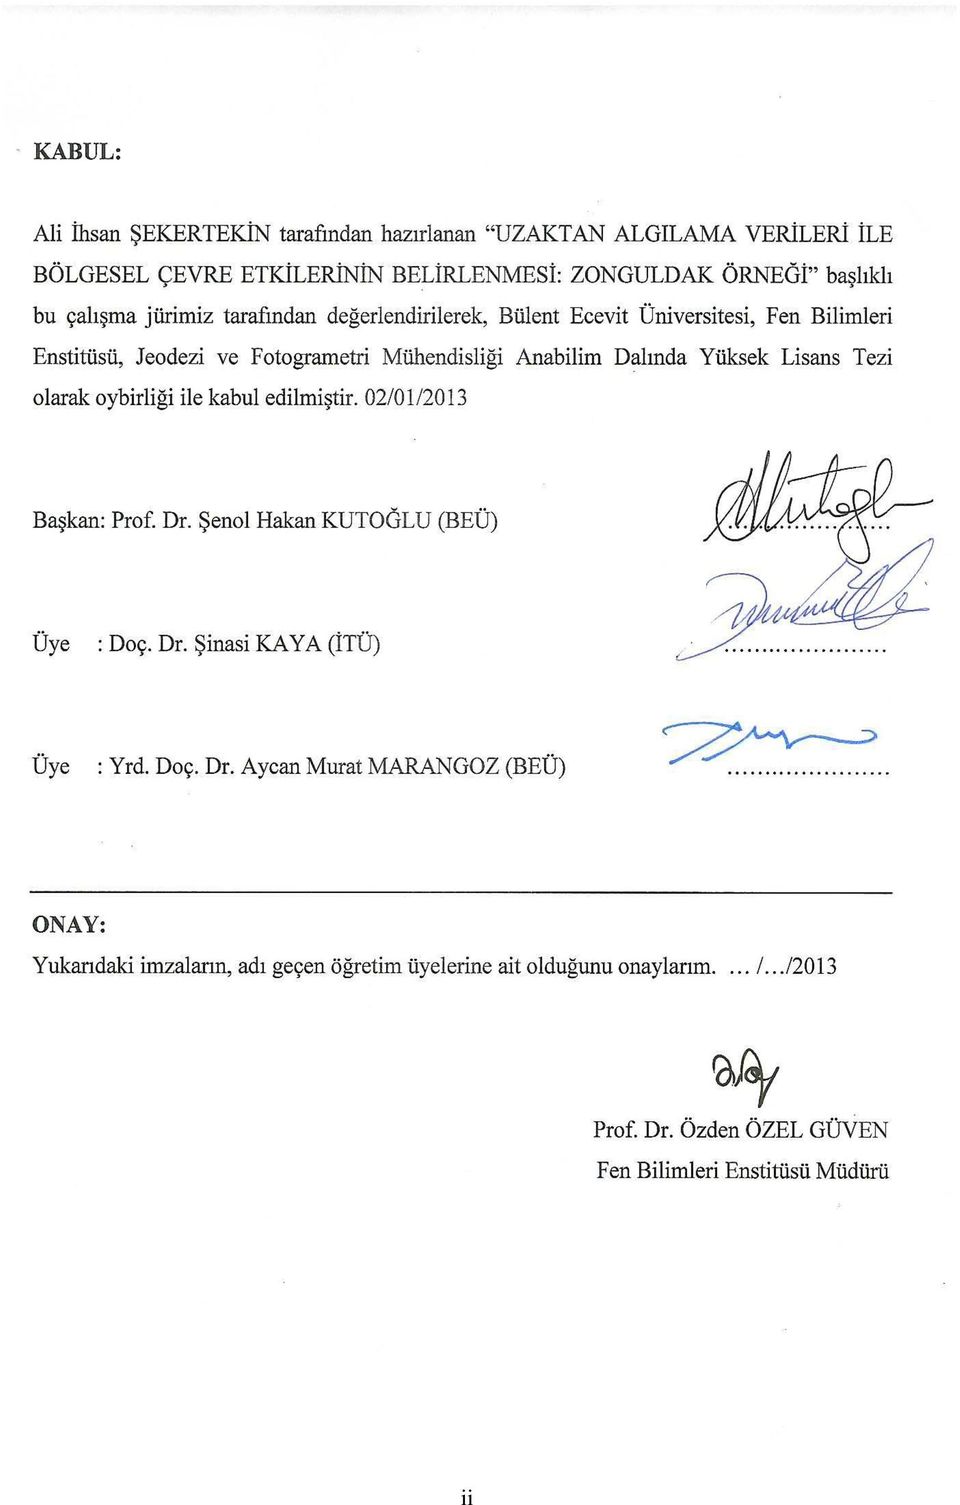 Tezi olarak oybirliği ile kabul edilmiştir. 02/01/2013 Başkan: Prof. Dr. Şenol Hakan KUTOĞLU (BEÜ). Üye : Doç. Dr. Şinasi KAYA (İTÜ). Üye : Yrd. Doç. Dr. Aycan Murat MARANGOZ (BEÜ).